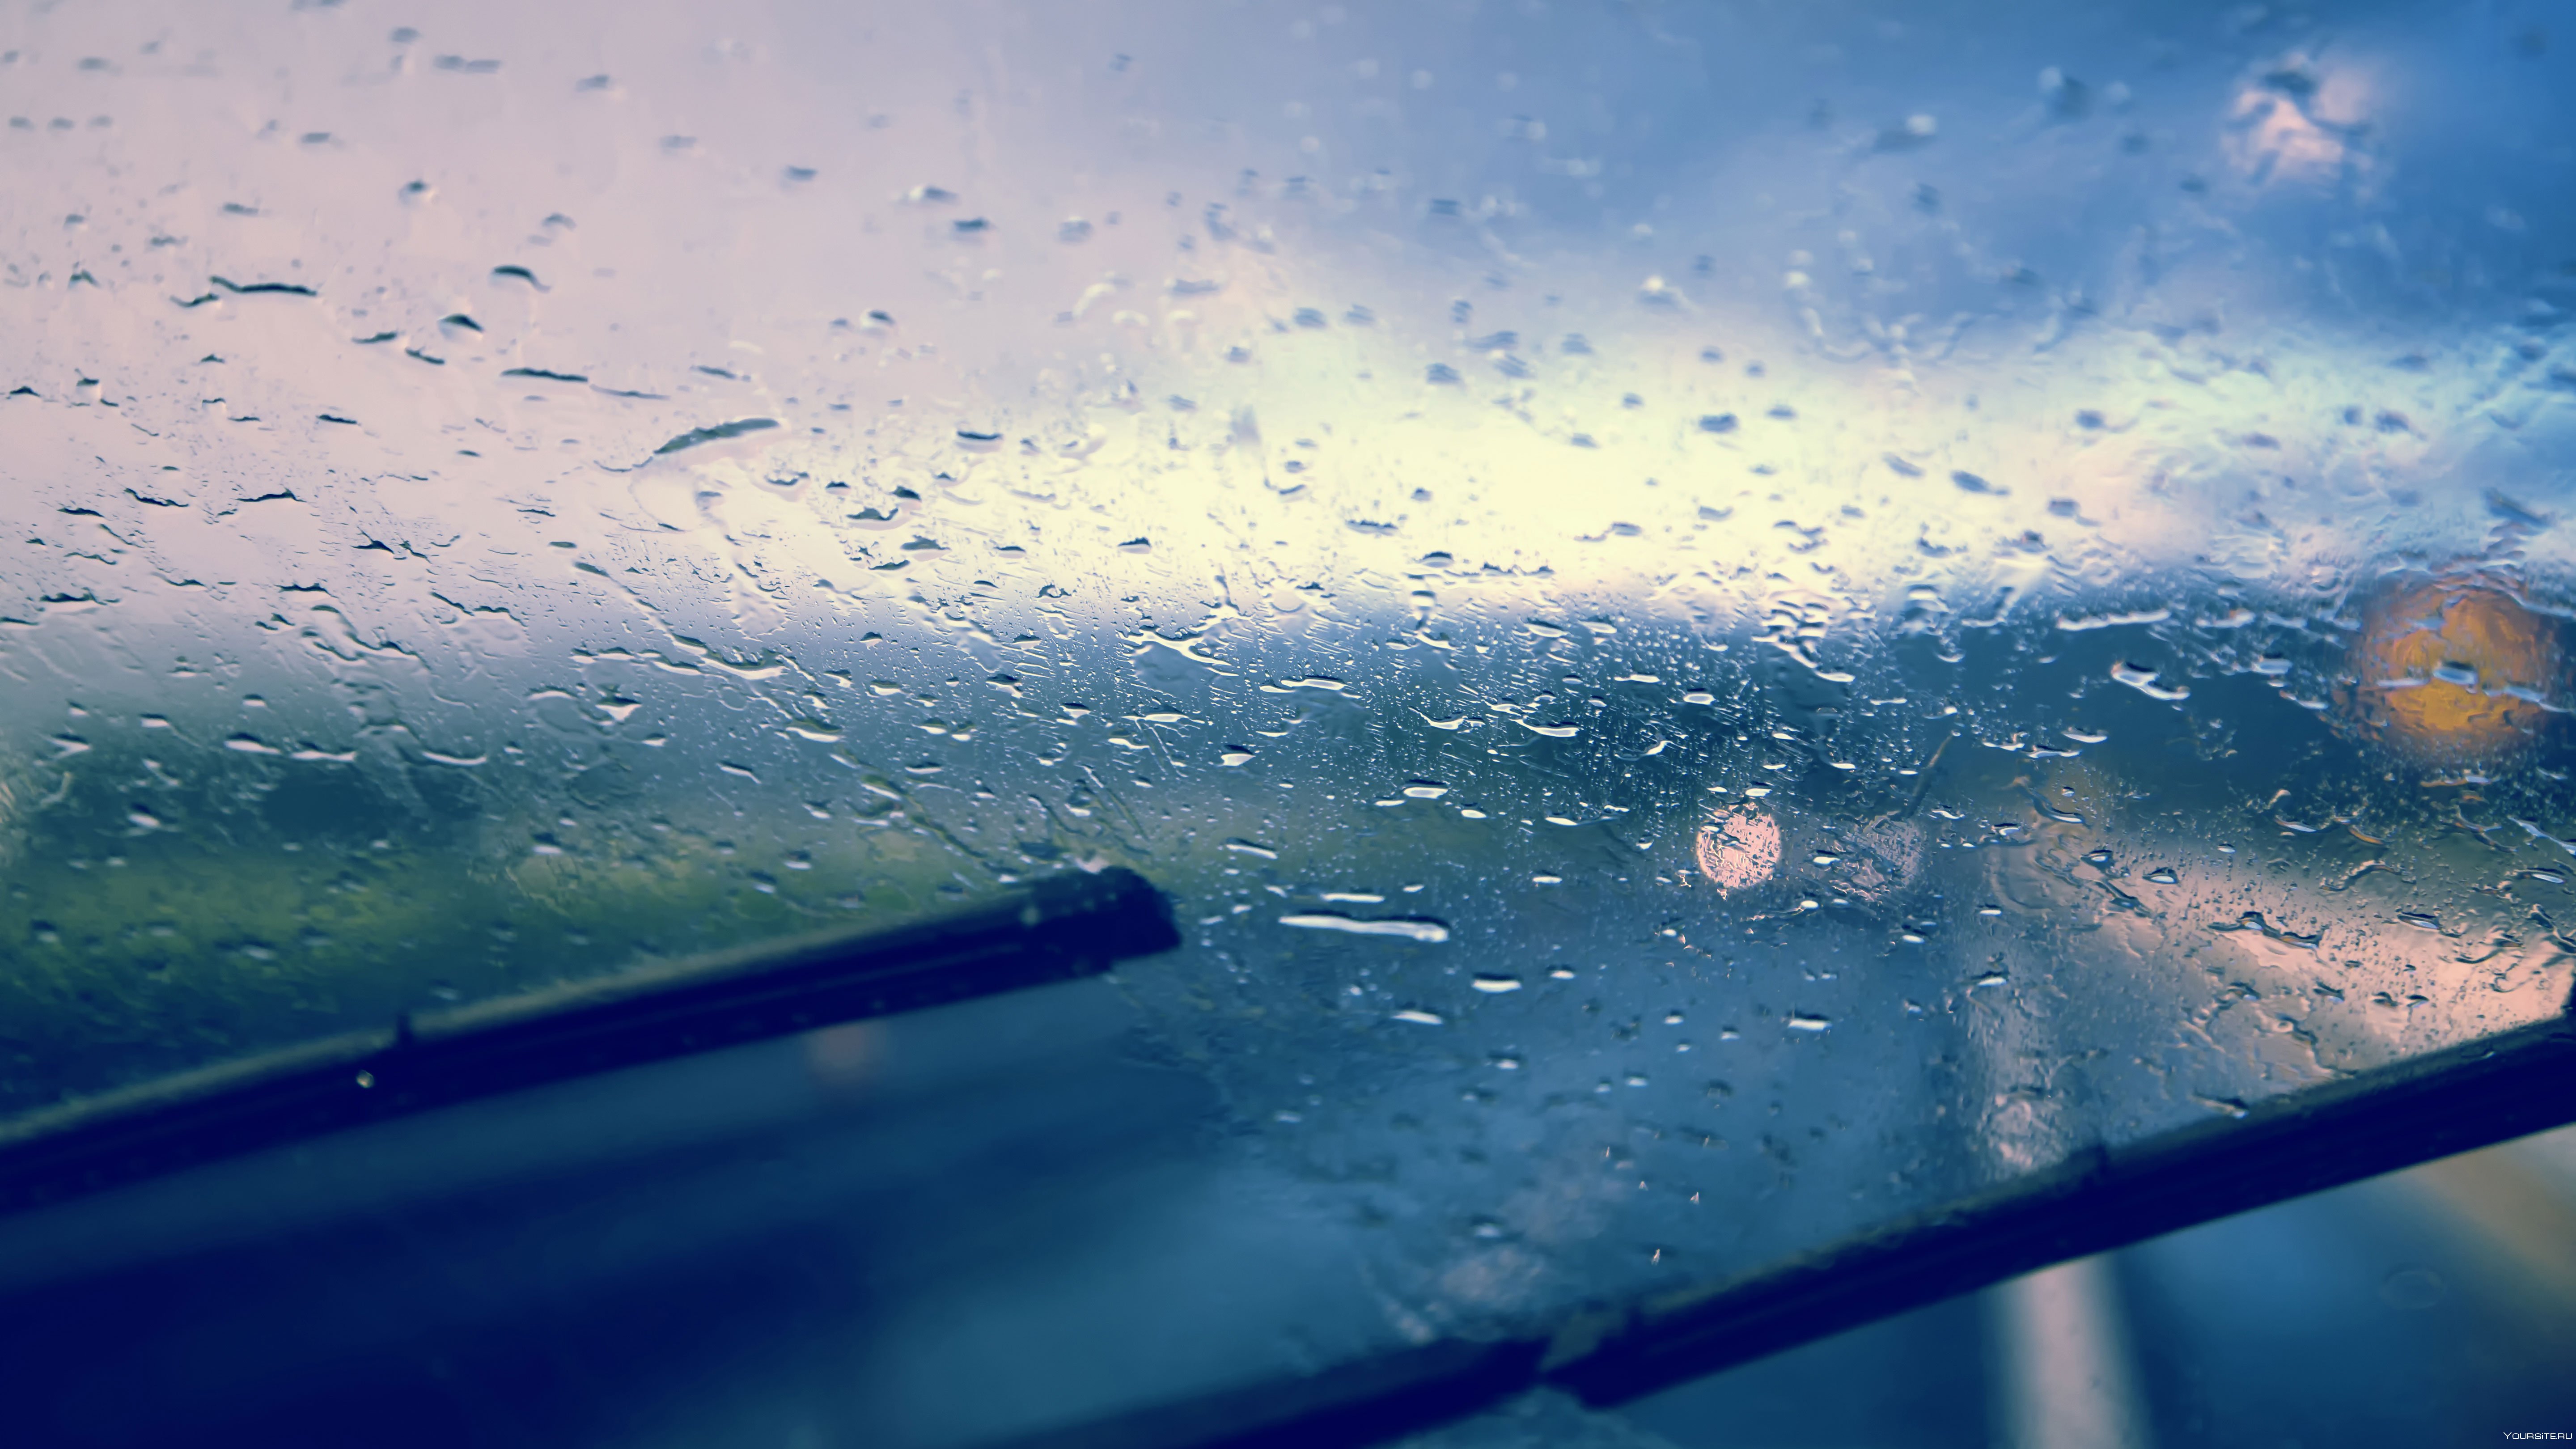 Каплями дождя смывает след. Капли на стекле машины. Дождь. Лобовое стекло в каплях дождя. Капли дождя на стекле авто.